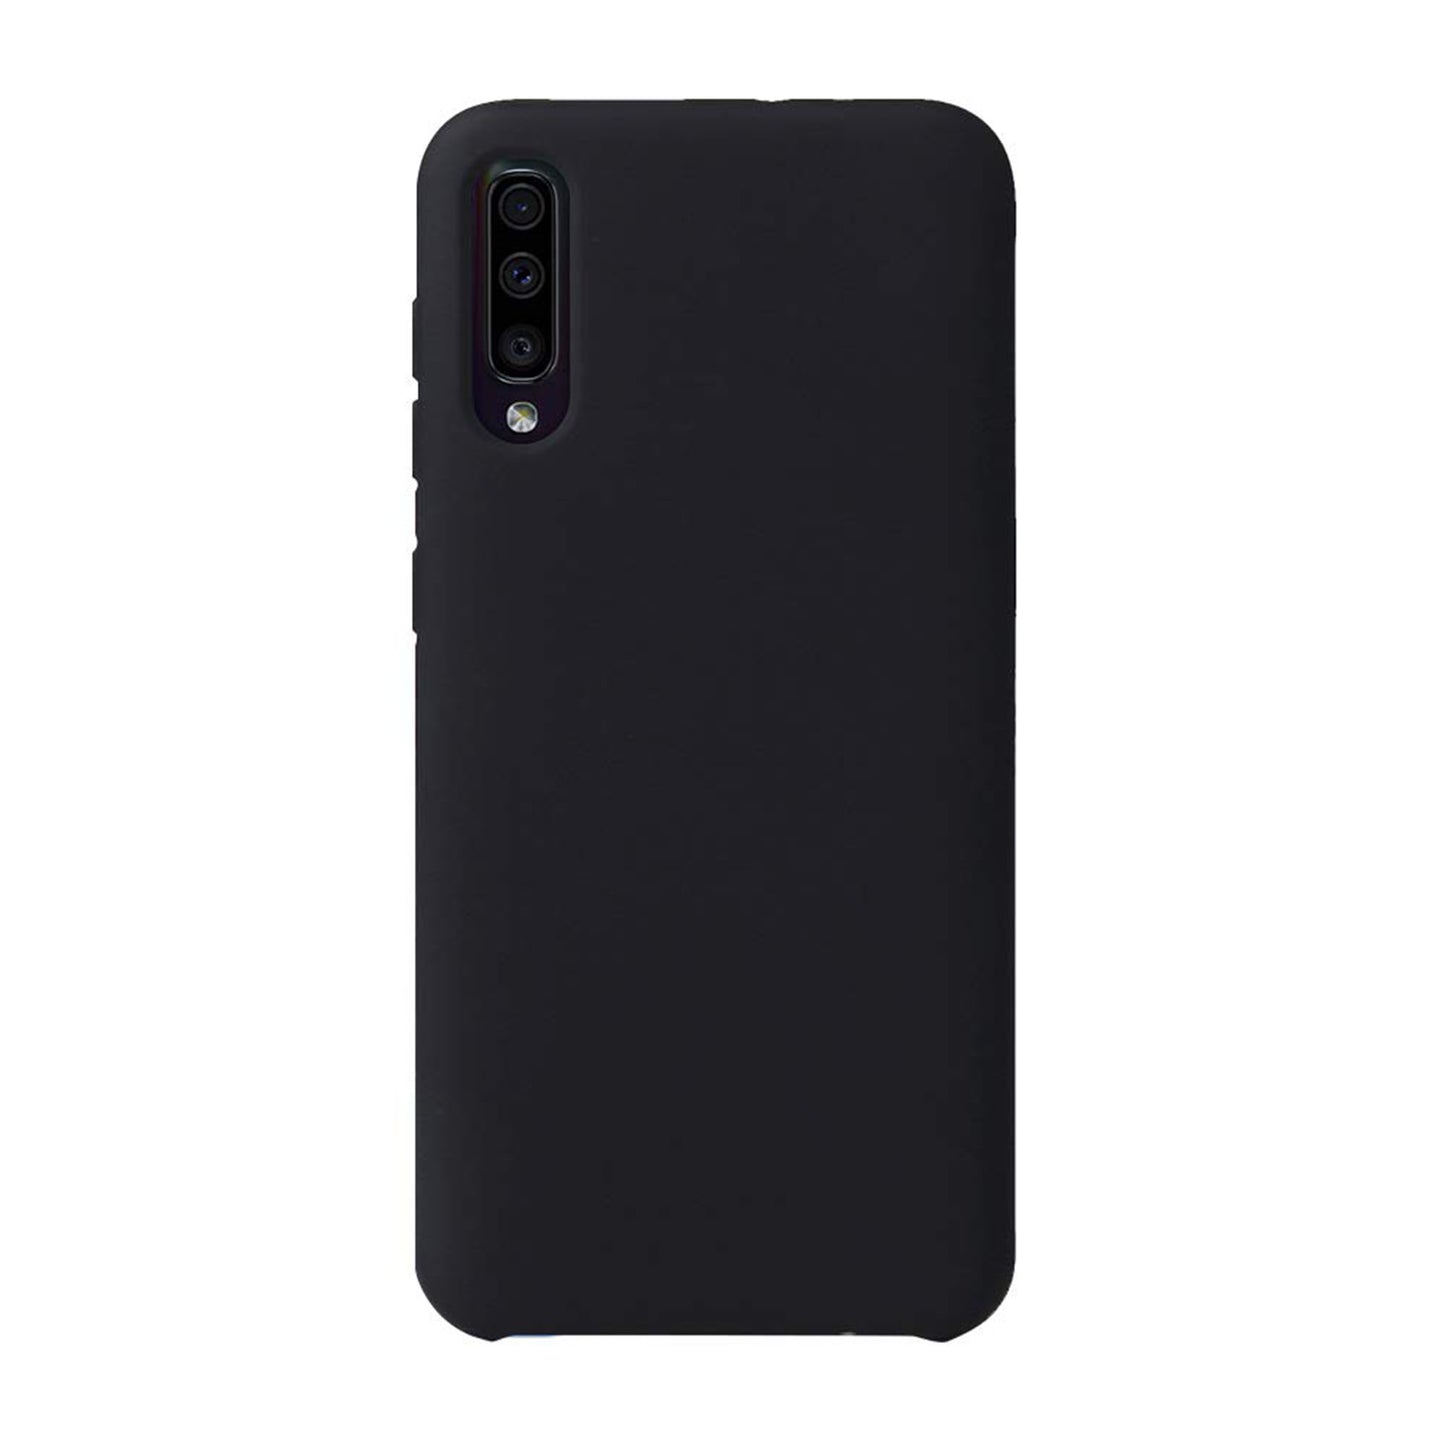 Samsung Galaxy A70 Uunique Black Liquid Silicone Case - 15-04681